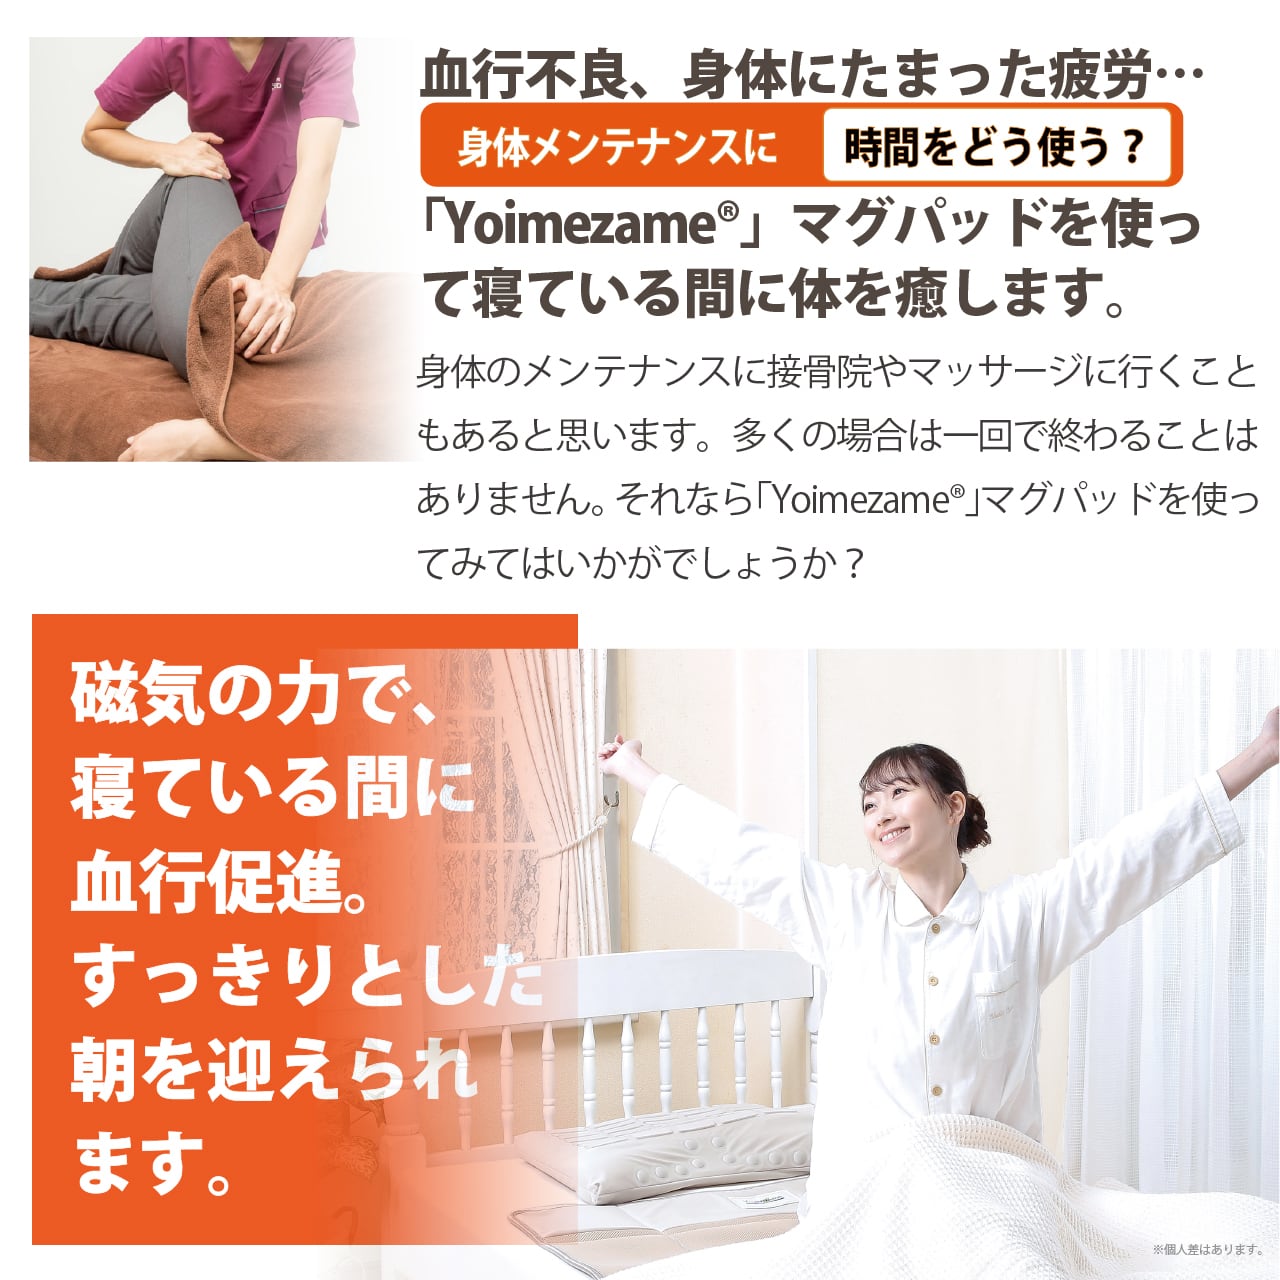 ”Yoimezame